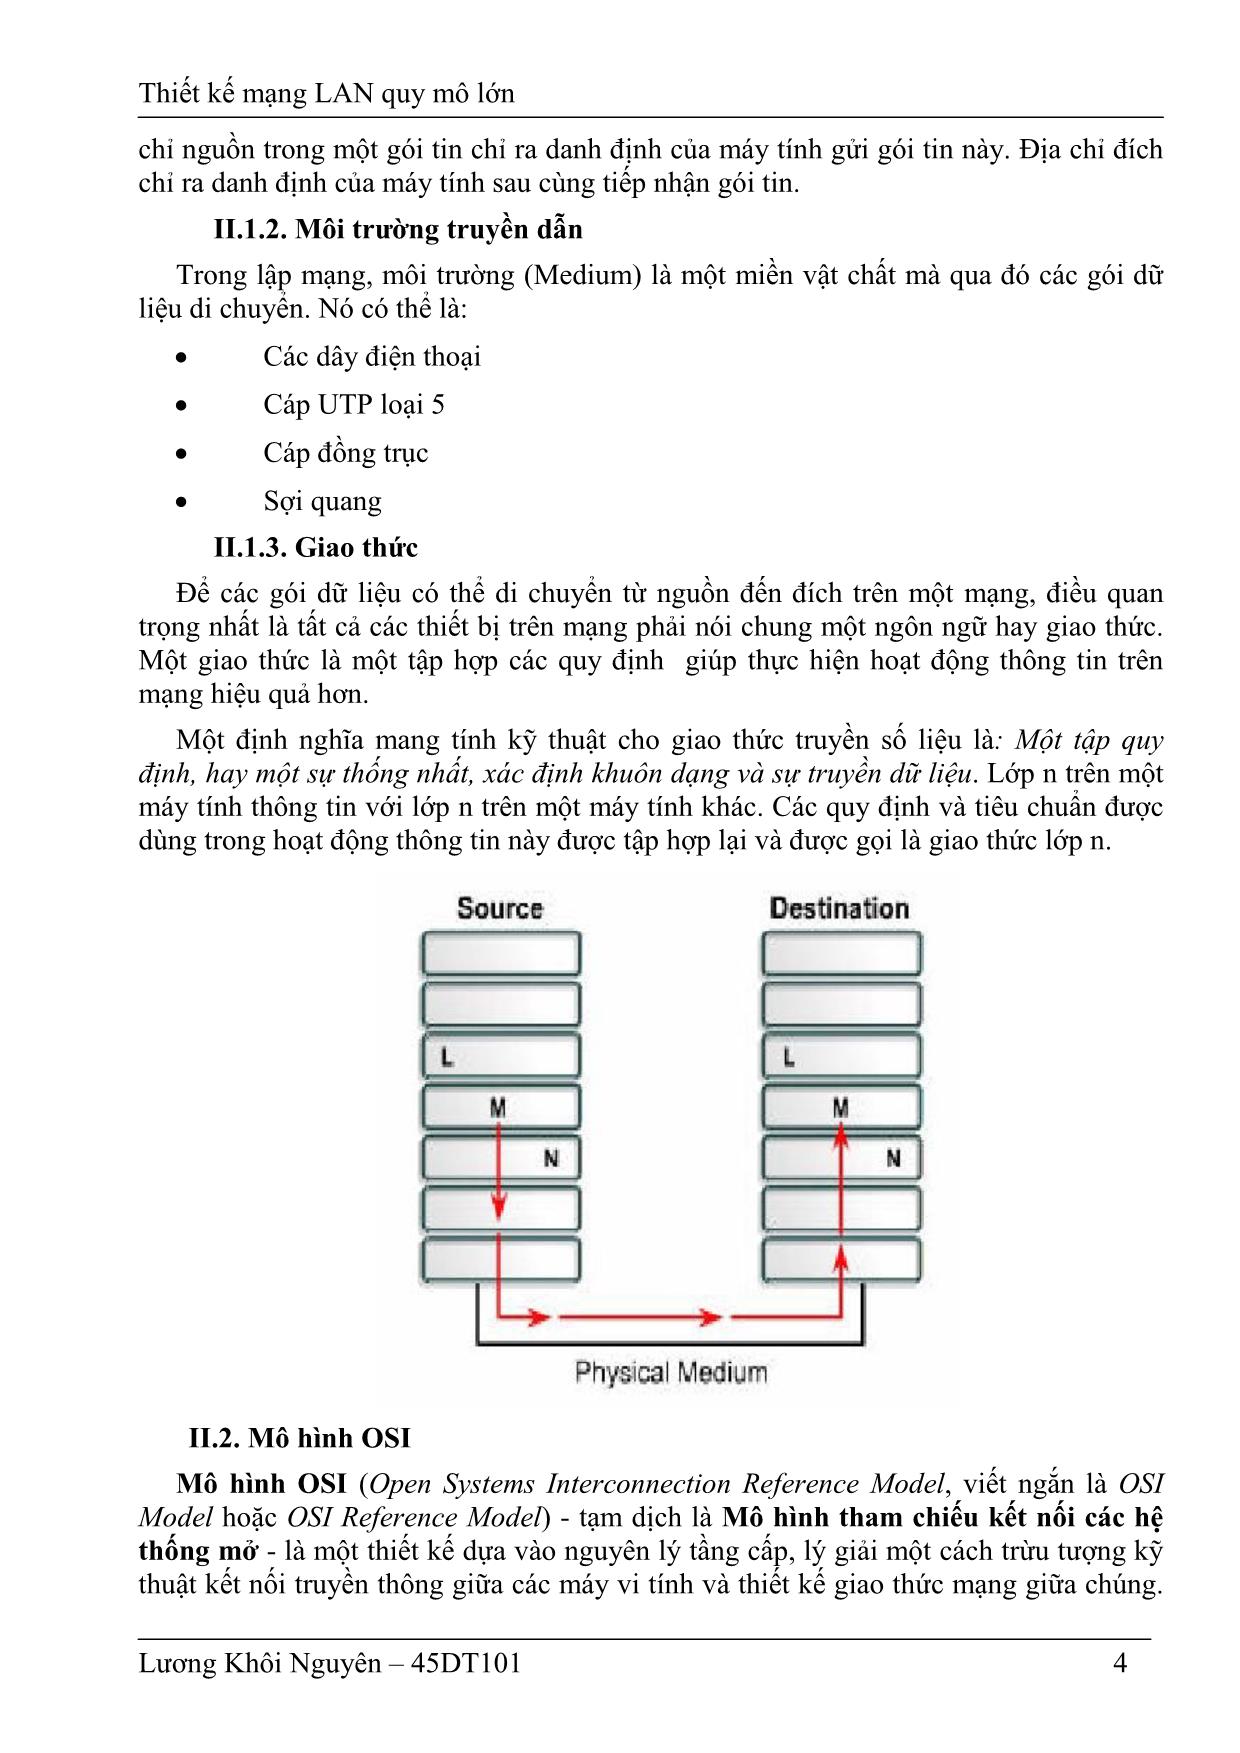 Luận văn Thiết kế mạng LAN quy mô lớn trang 5